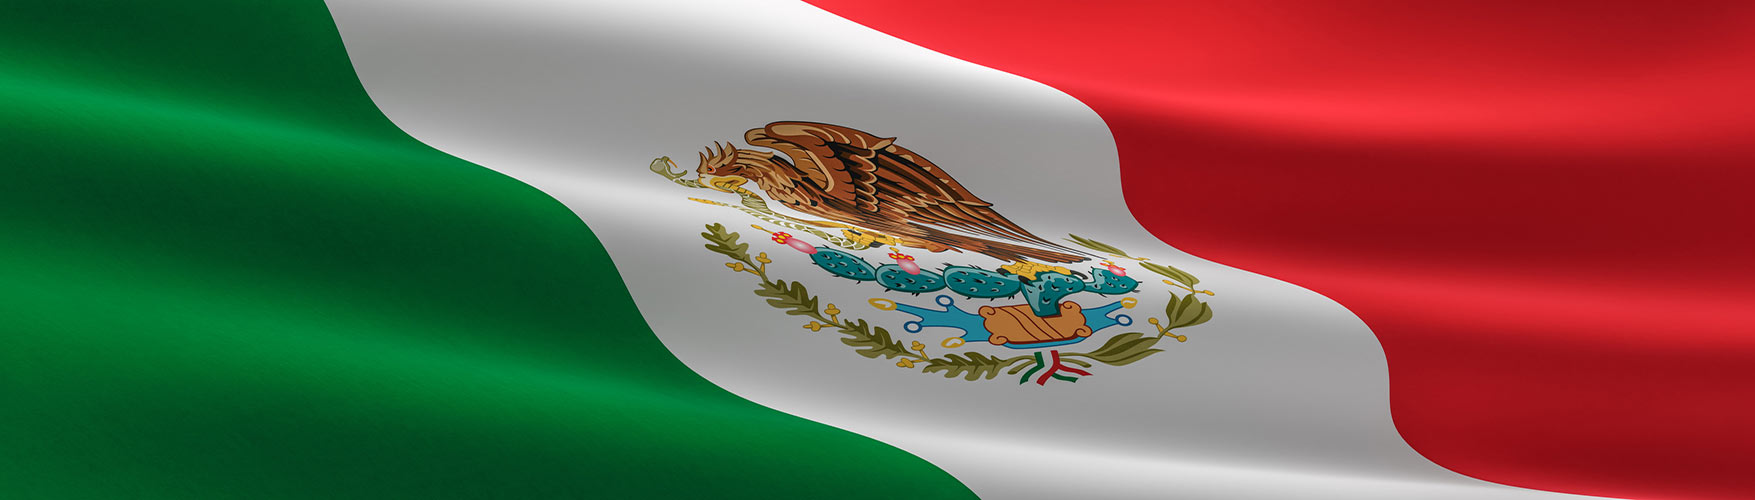 EHEDG Mexico